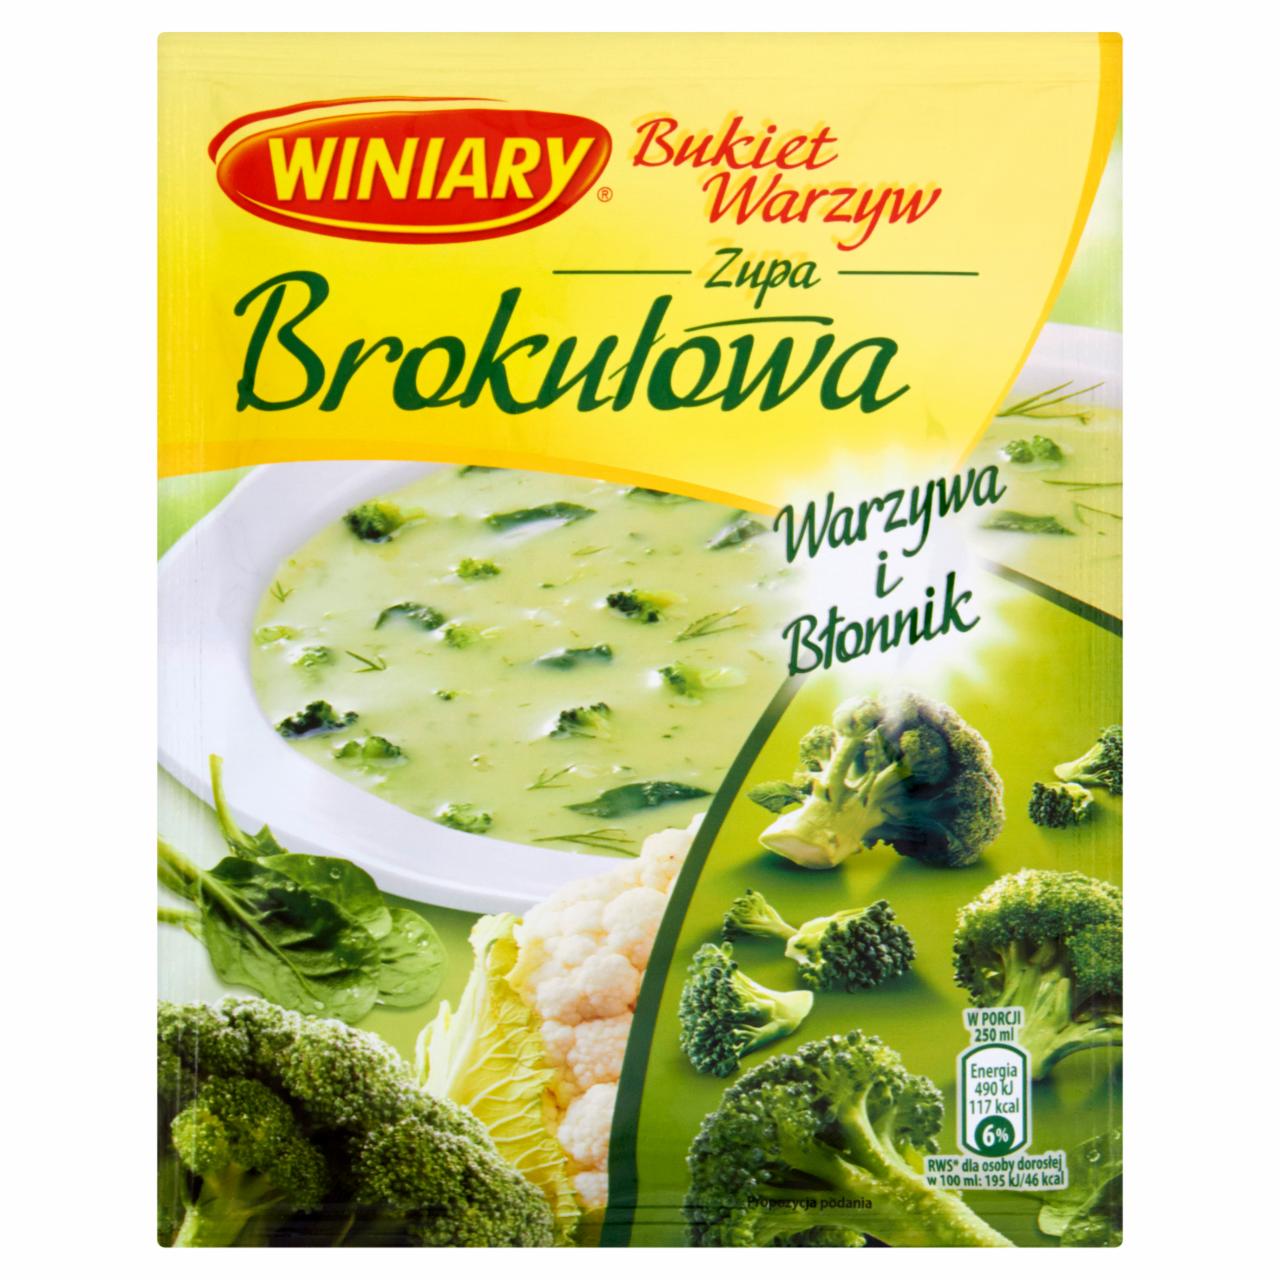 Zdjęcia - Winiary Bukiet Warzyw Zupa brokułowa 63 g